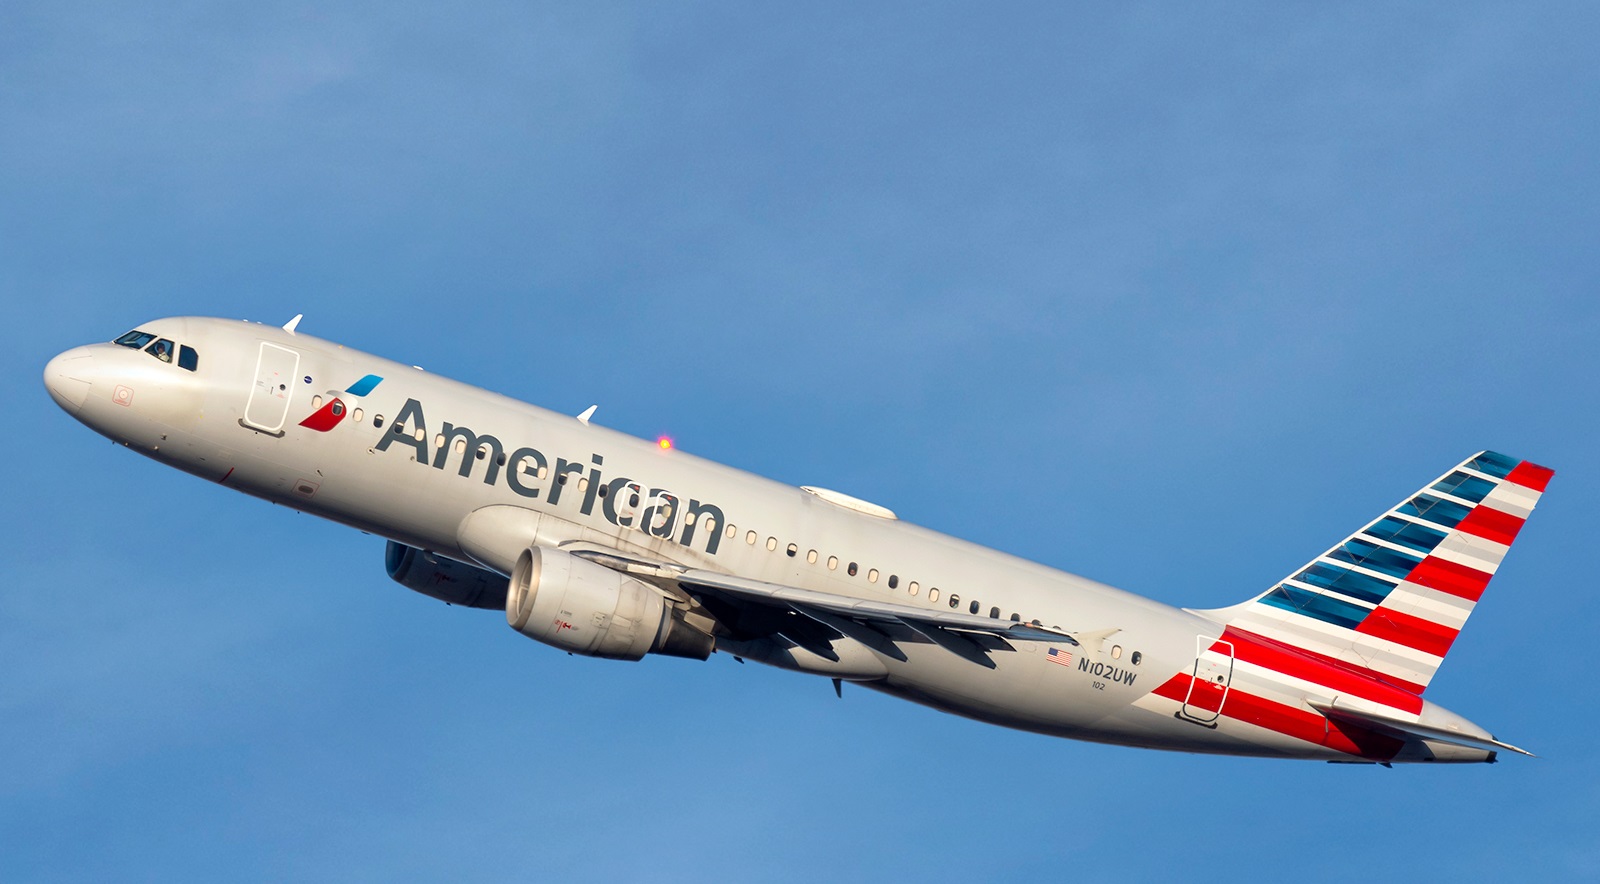 भेदभावको पराकाष्टाः काला यात्रुलाई विमानबाट उतारेपछि अमेरिकन एयरलाइन्सका कर्मचारीमाथि कारबाही